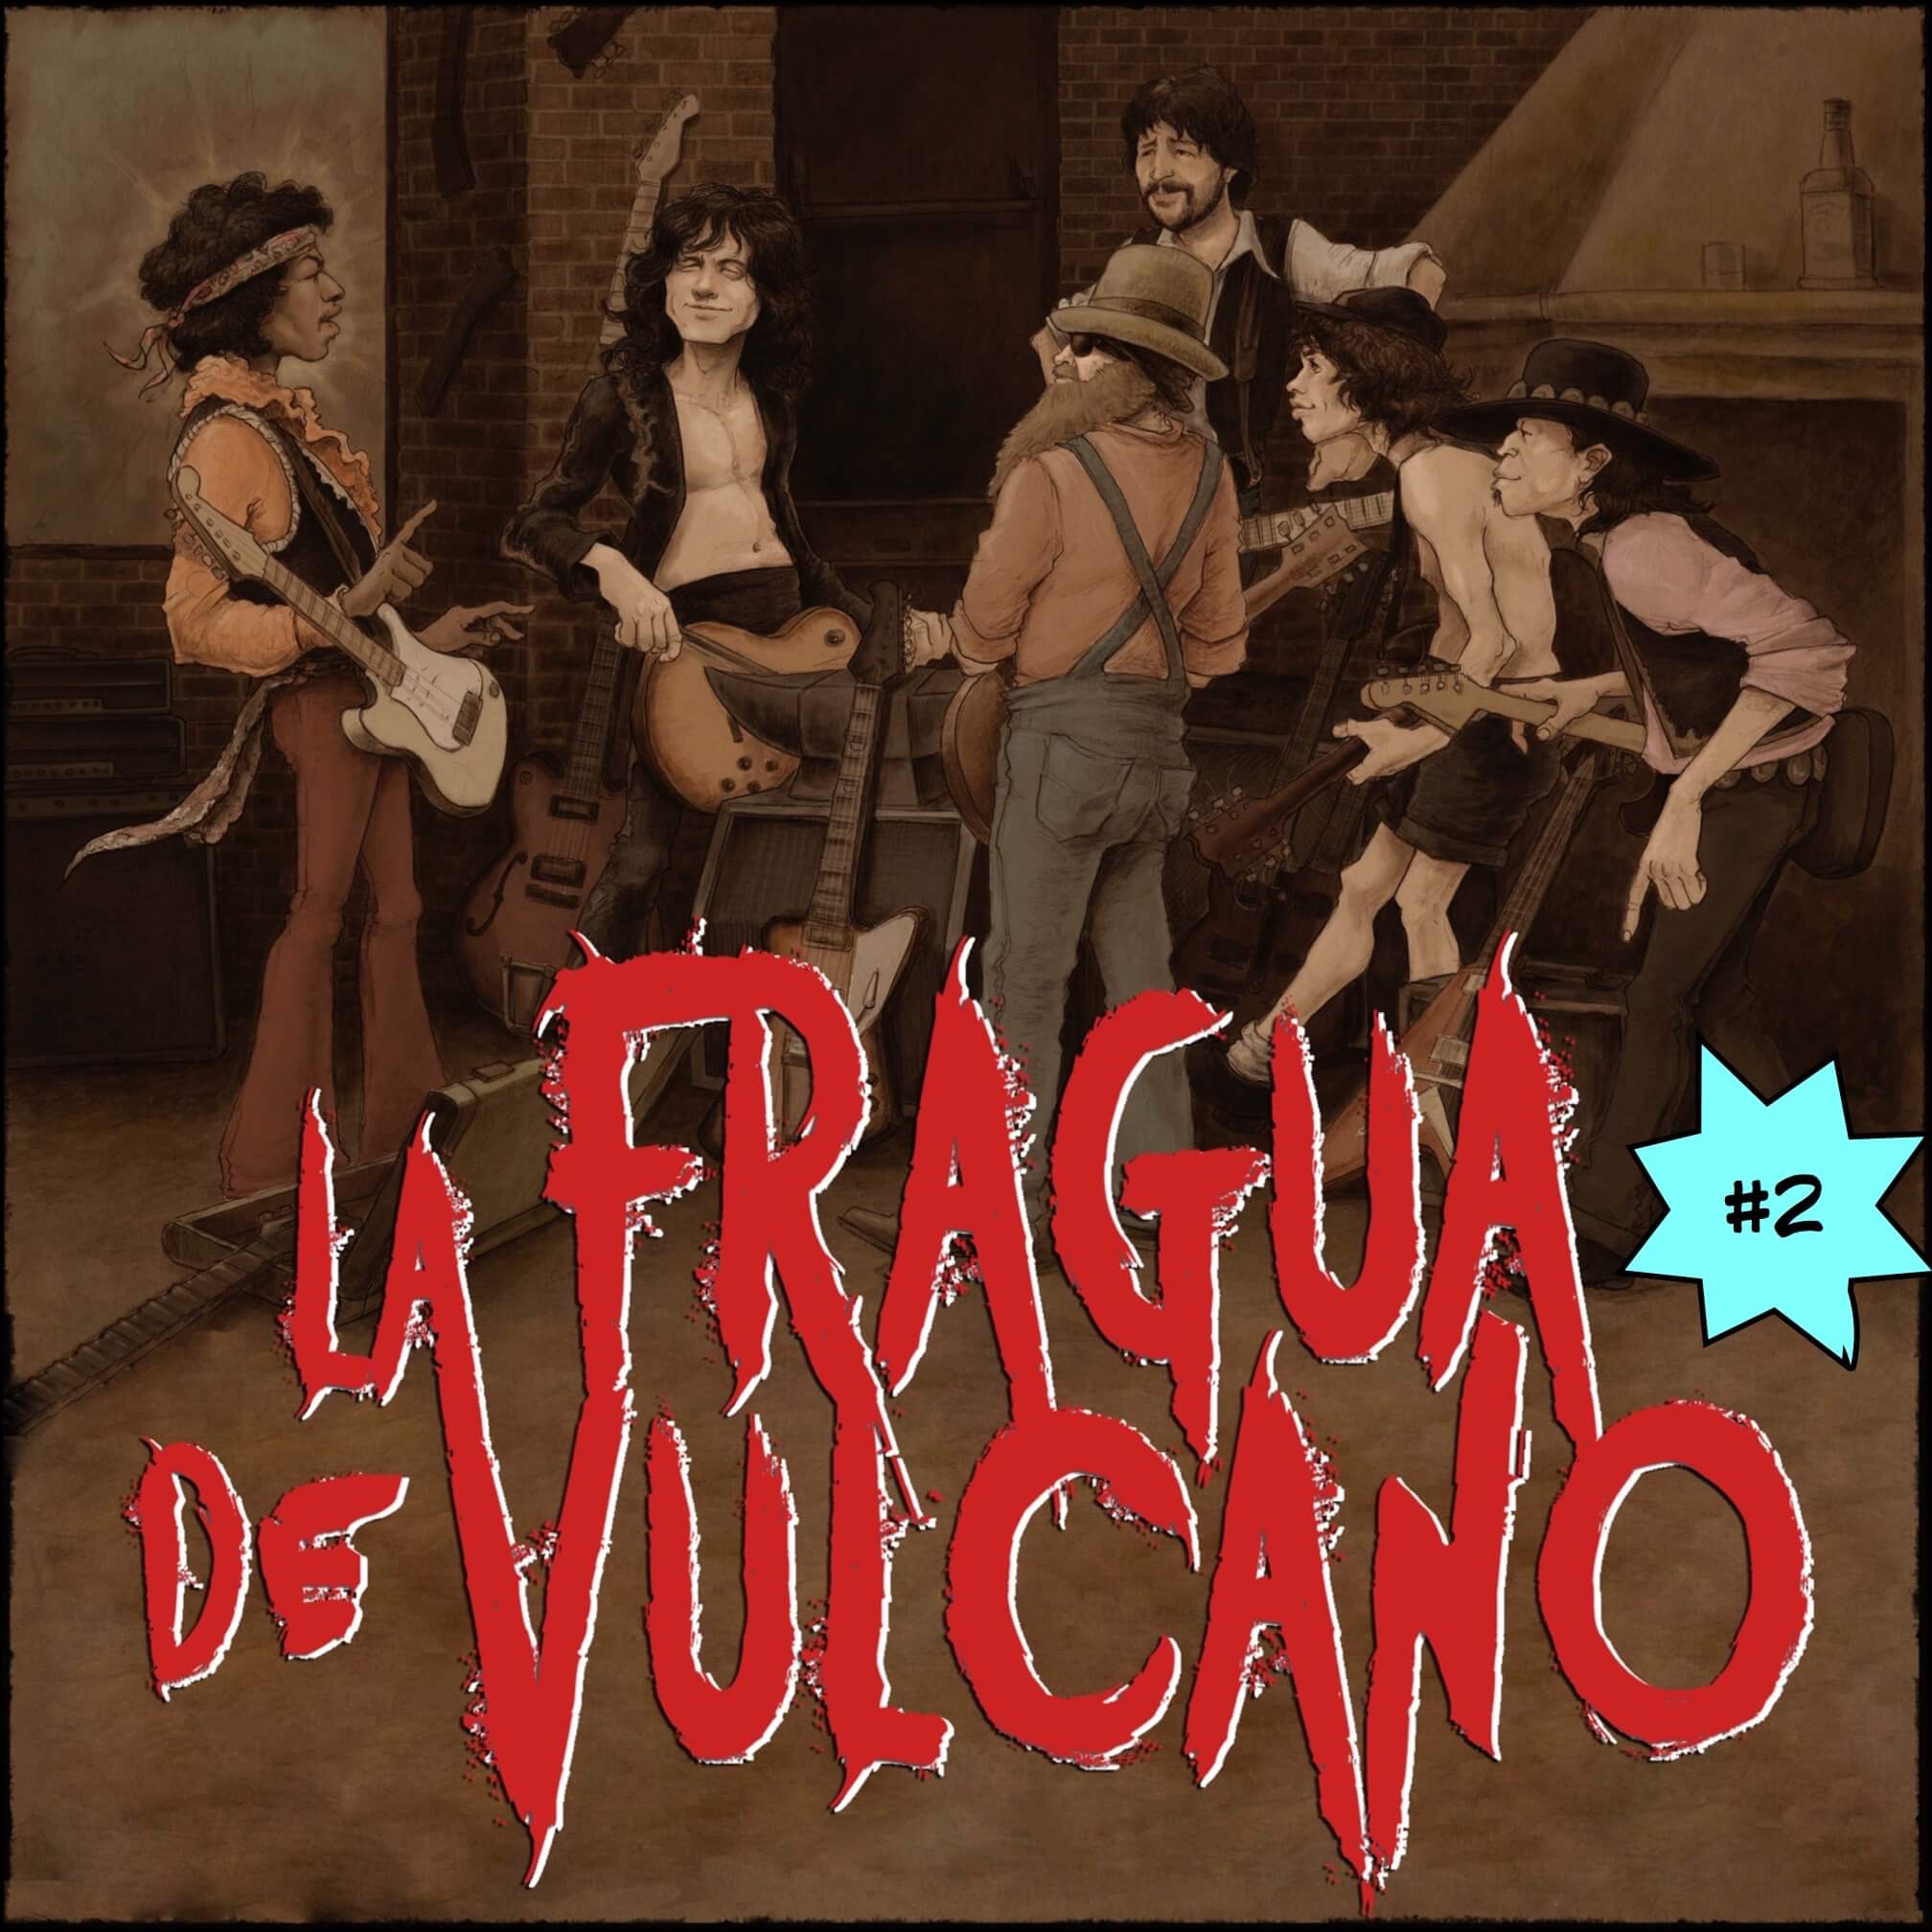 La Fragua de Vulcano #2 J.F. León